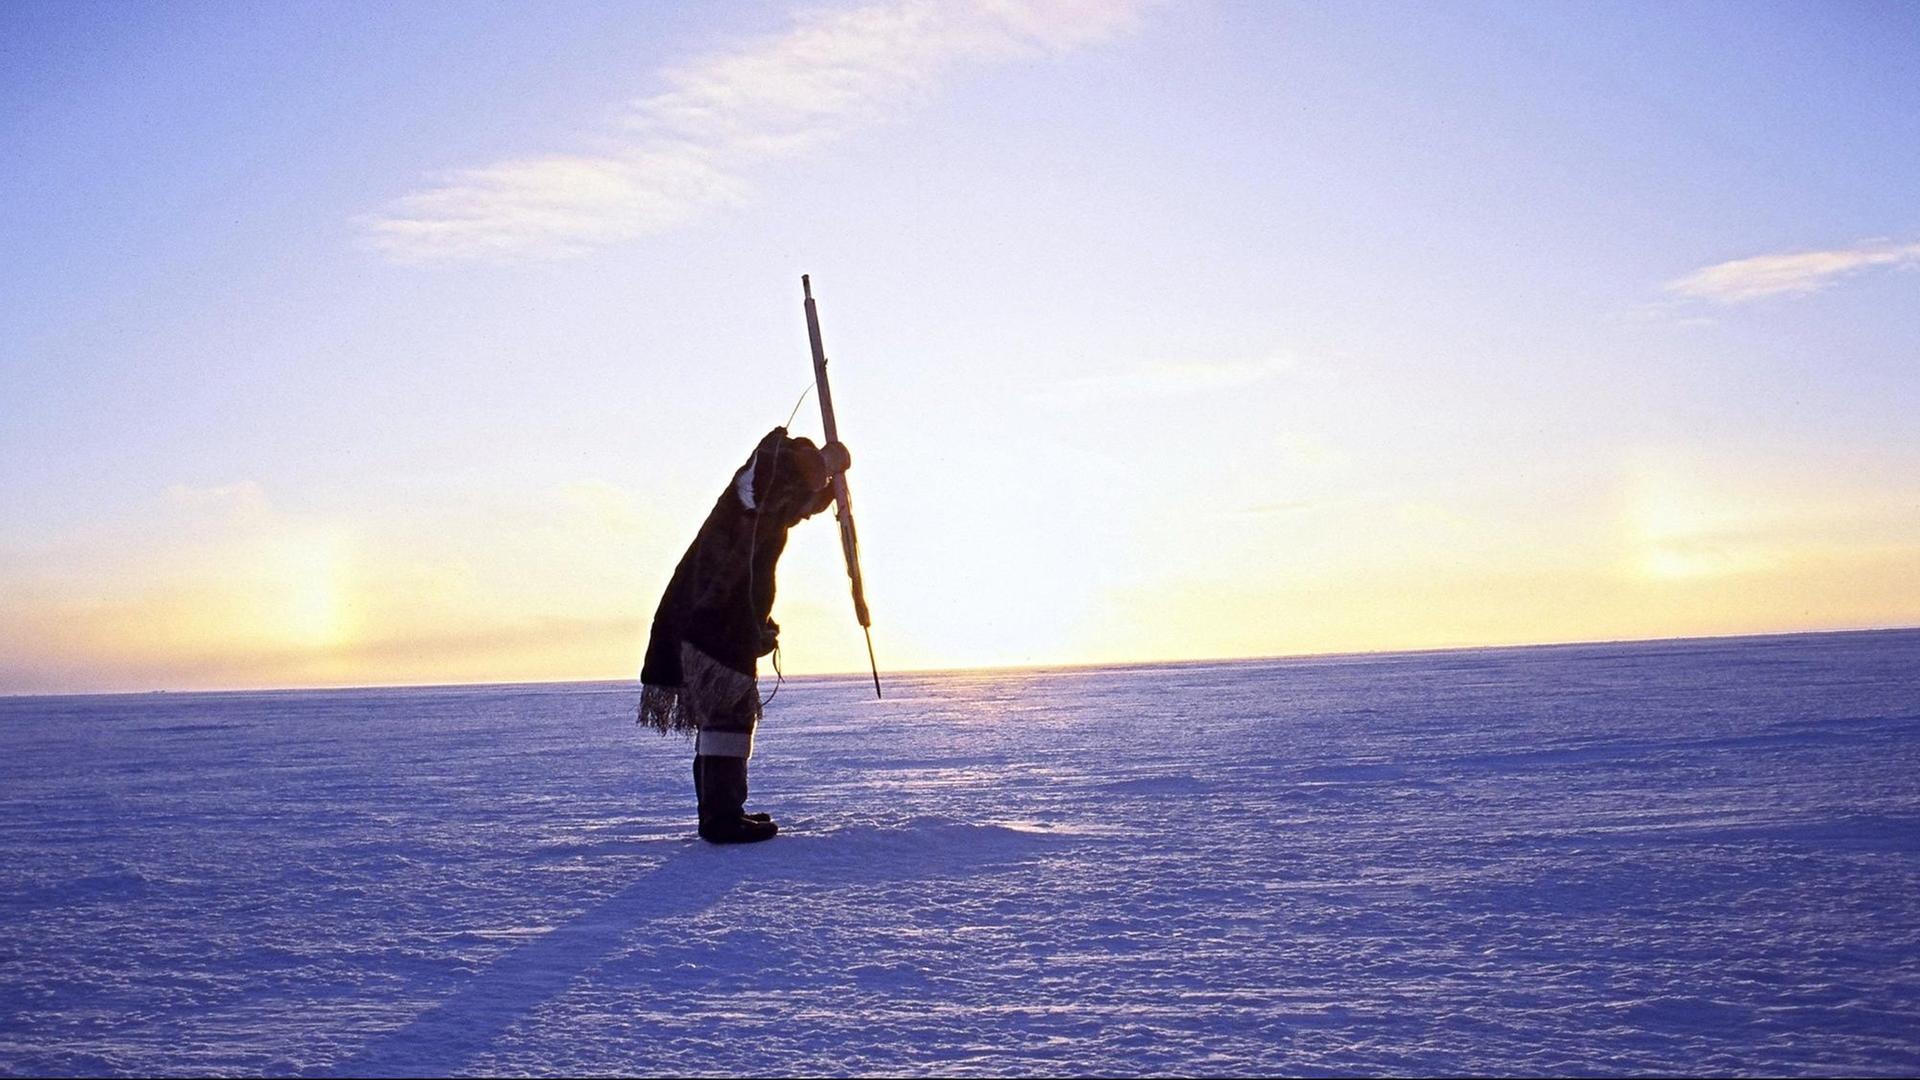 Ein Eskimo ist auf der Jagd nach Seehunden, aufgenommen 1995 im kandadischen Territorium Nunavut. Undatiert.